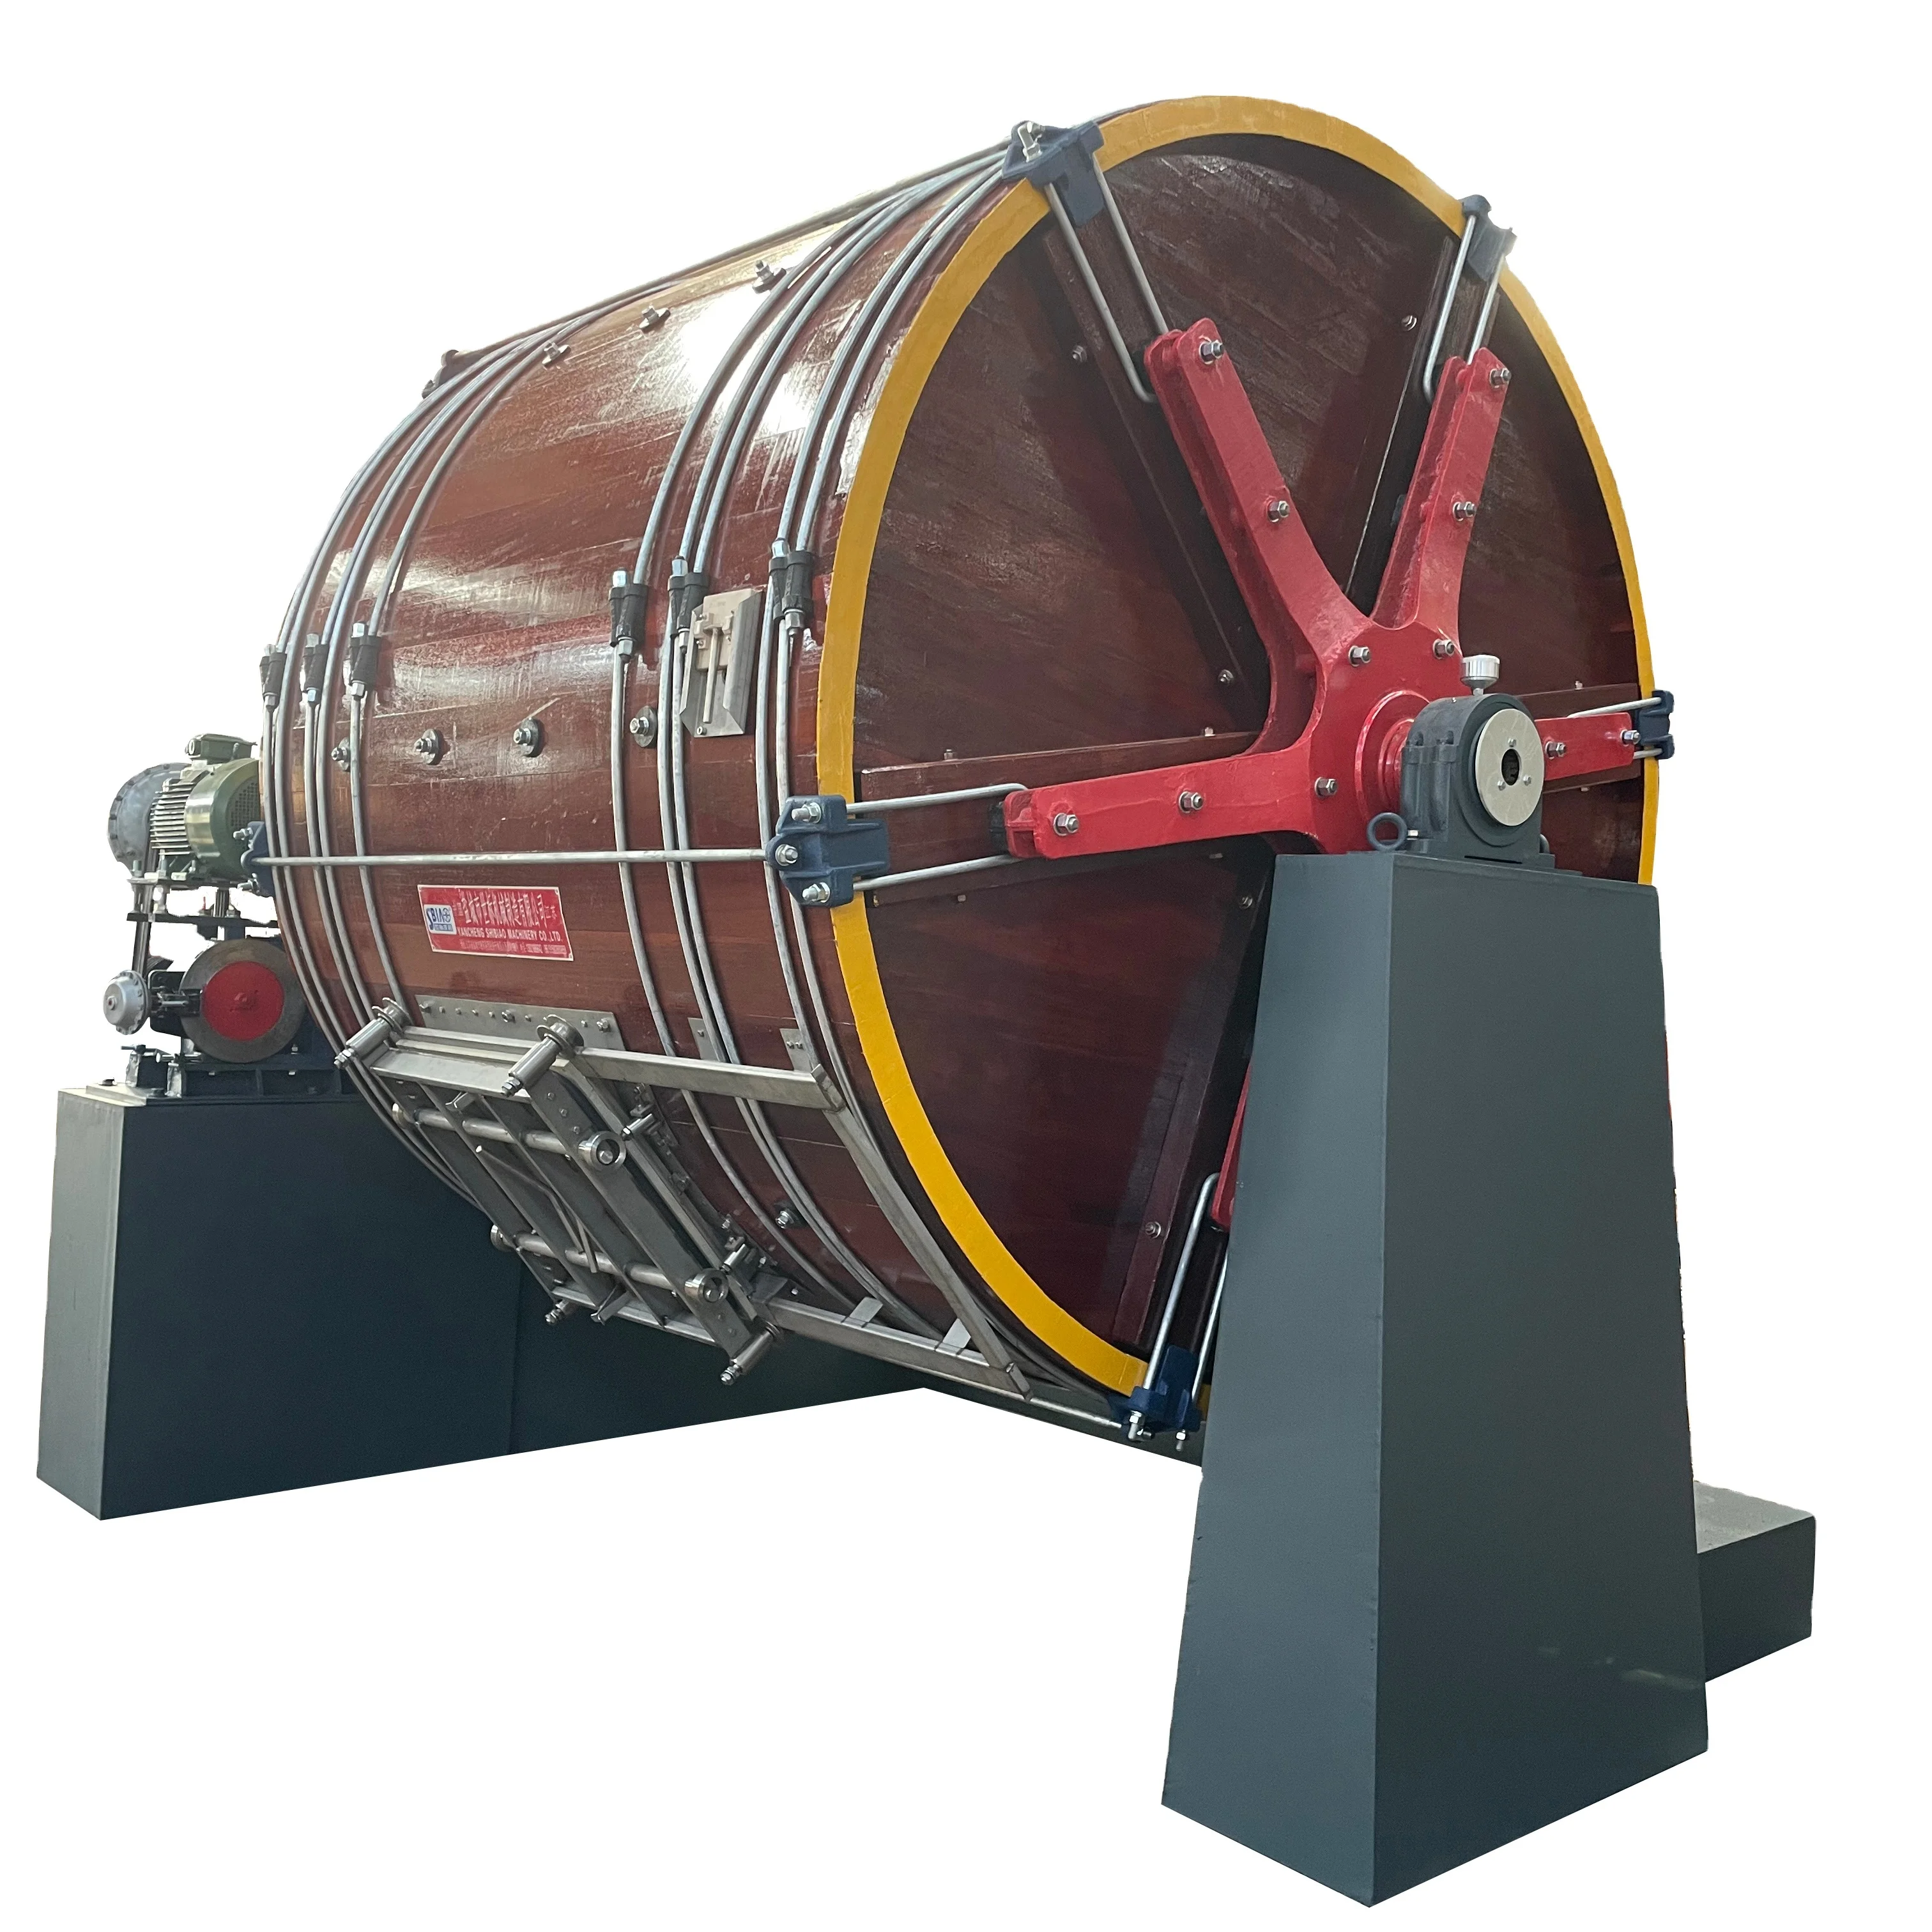 Оборудование для дубильной промышленности D2.5M by 2M, топливный деревянный барабан для кожи/барабан для окрашивания кожи/деревянный грезер (60283497006)